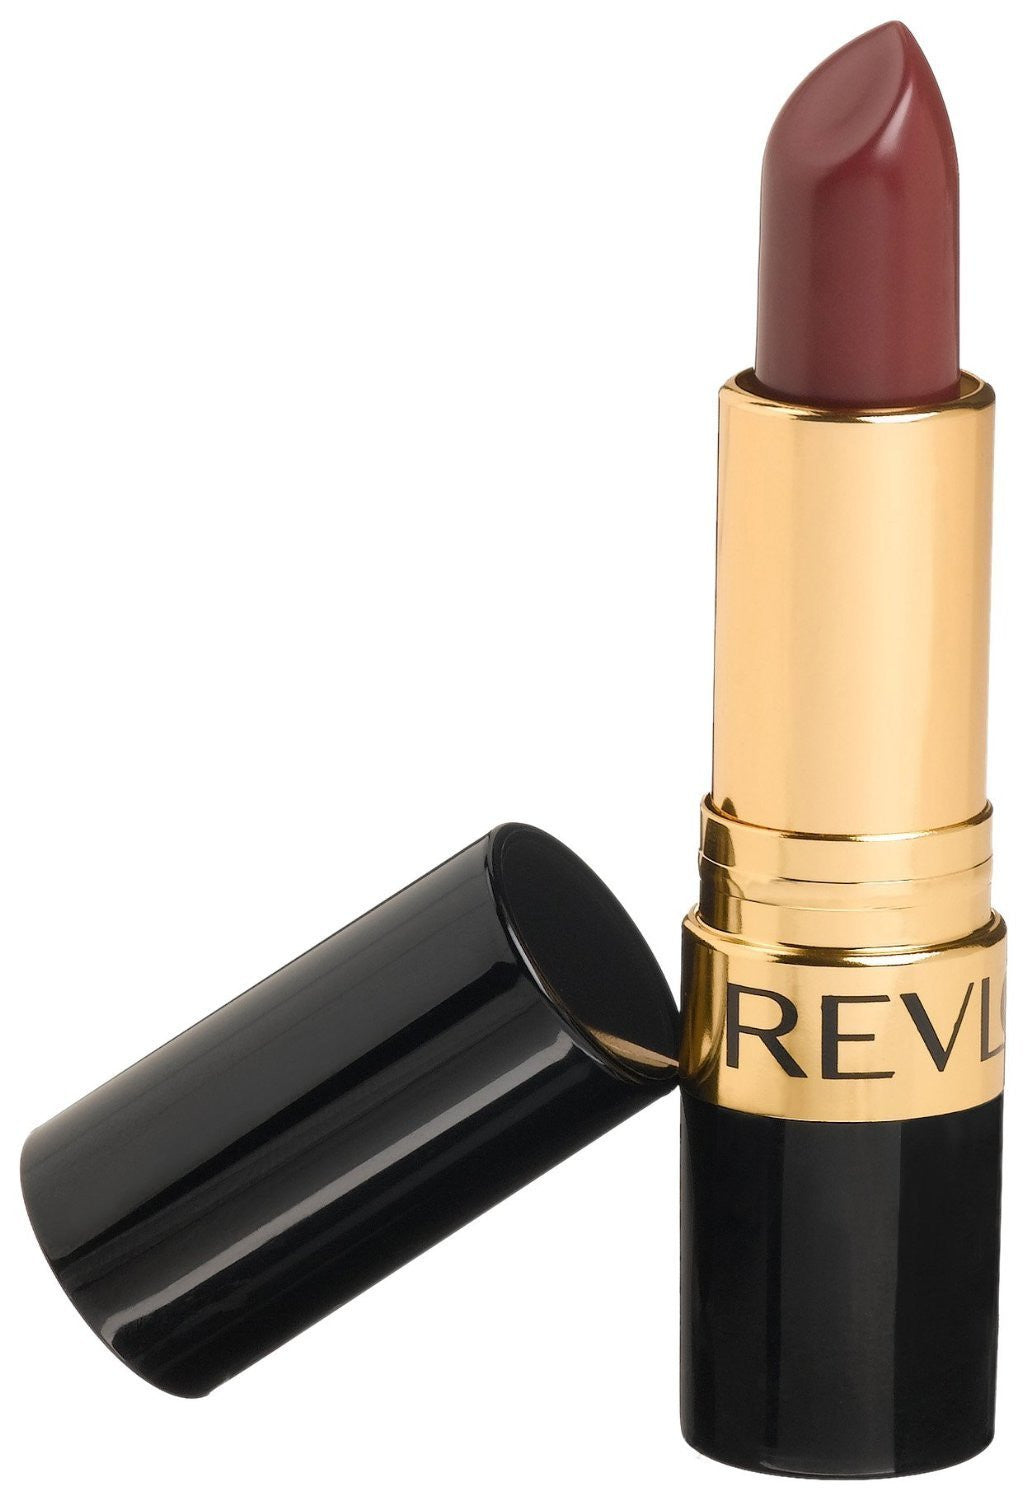 Revlon Super Lustrous Lipstick Creme, 646 Sultry Sable - ADDROS.COM